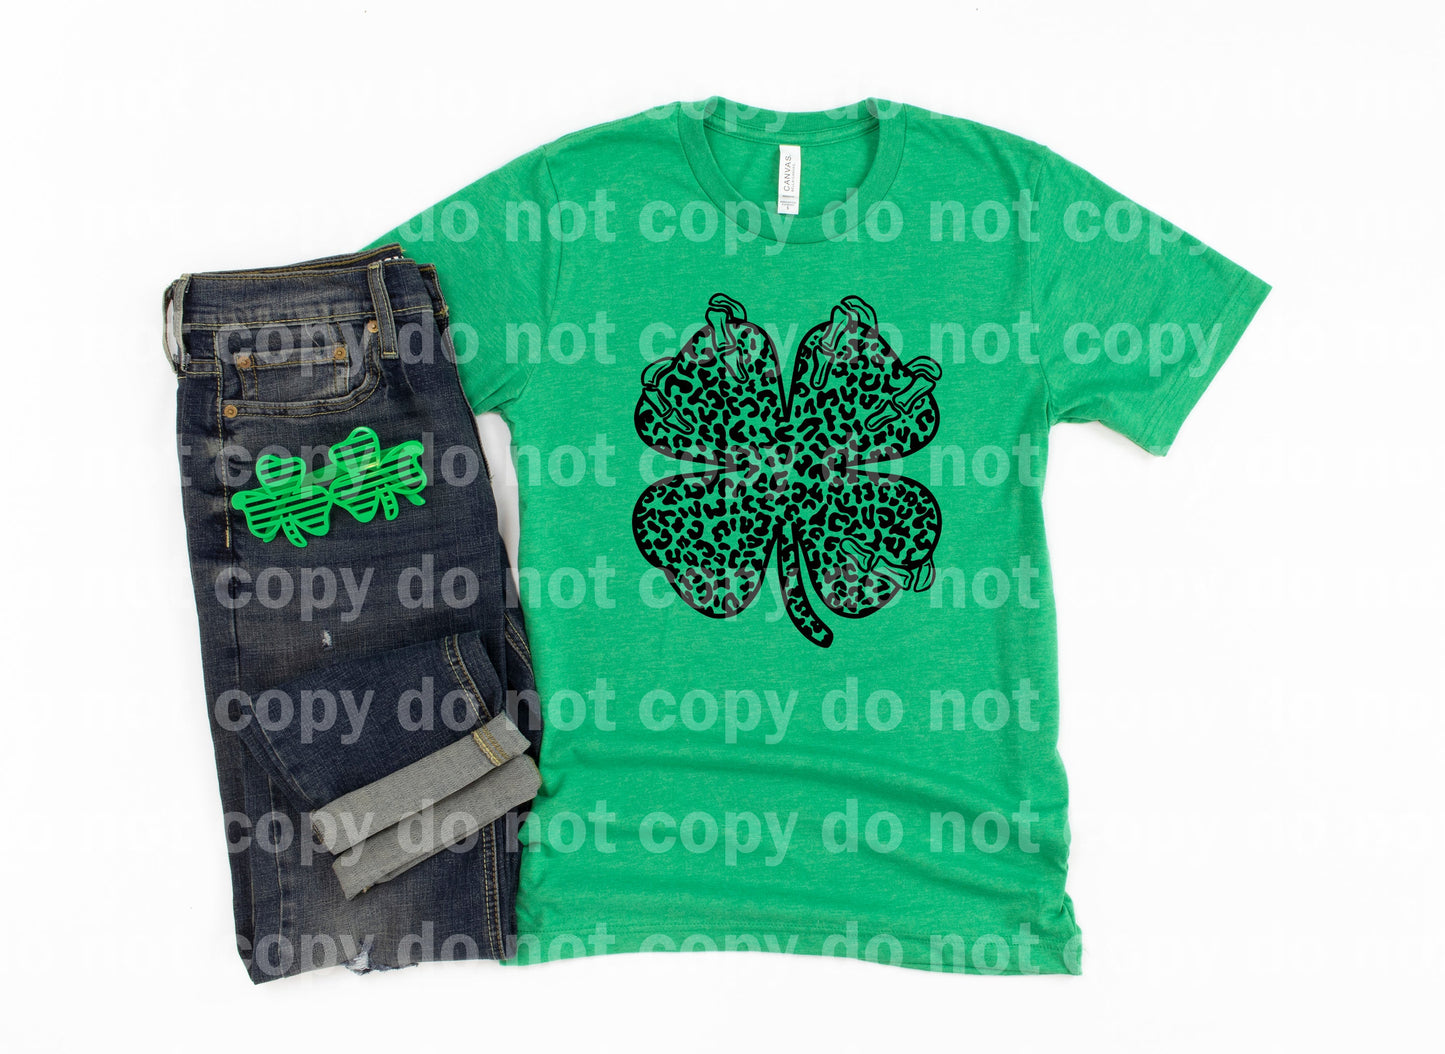 Clover Leaf Skellie Leopard Print Full Color/One Color Dream Print or Sublimation Print